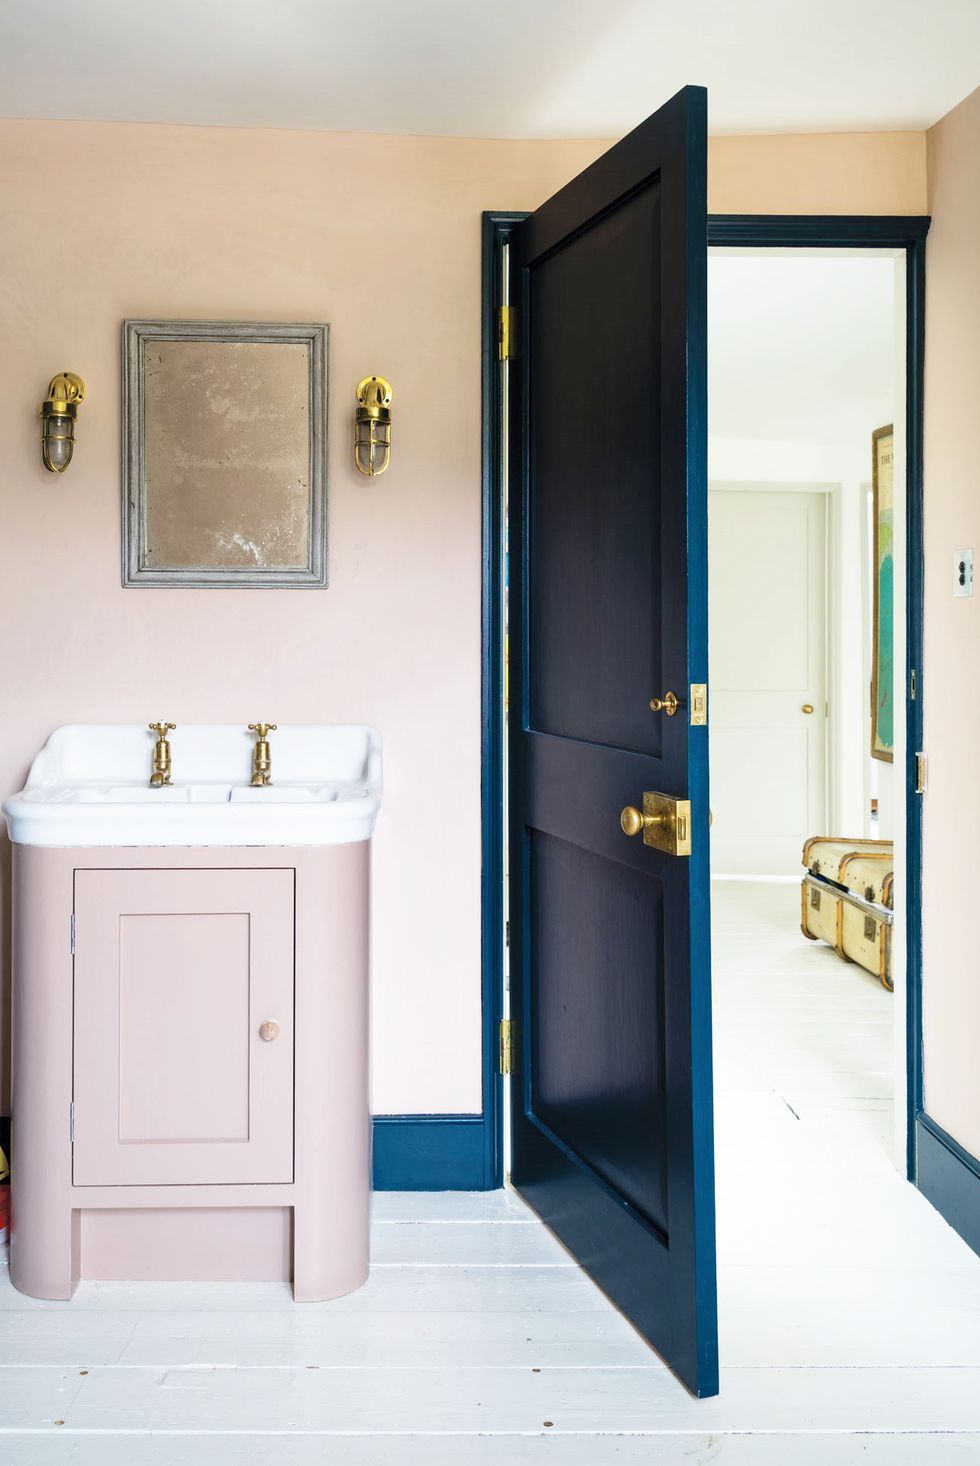 Hình ảnh phòng tắm nhỏ màu hồng tro, cửa vào màu xanh dương